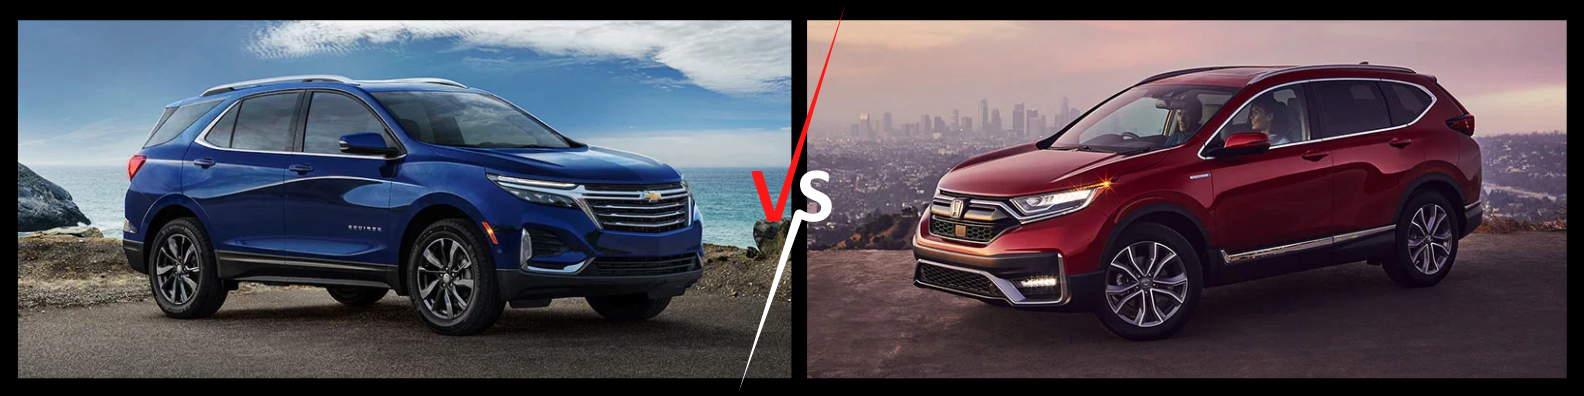  Comparación de modelos Chevrolet